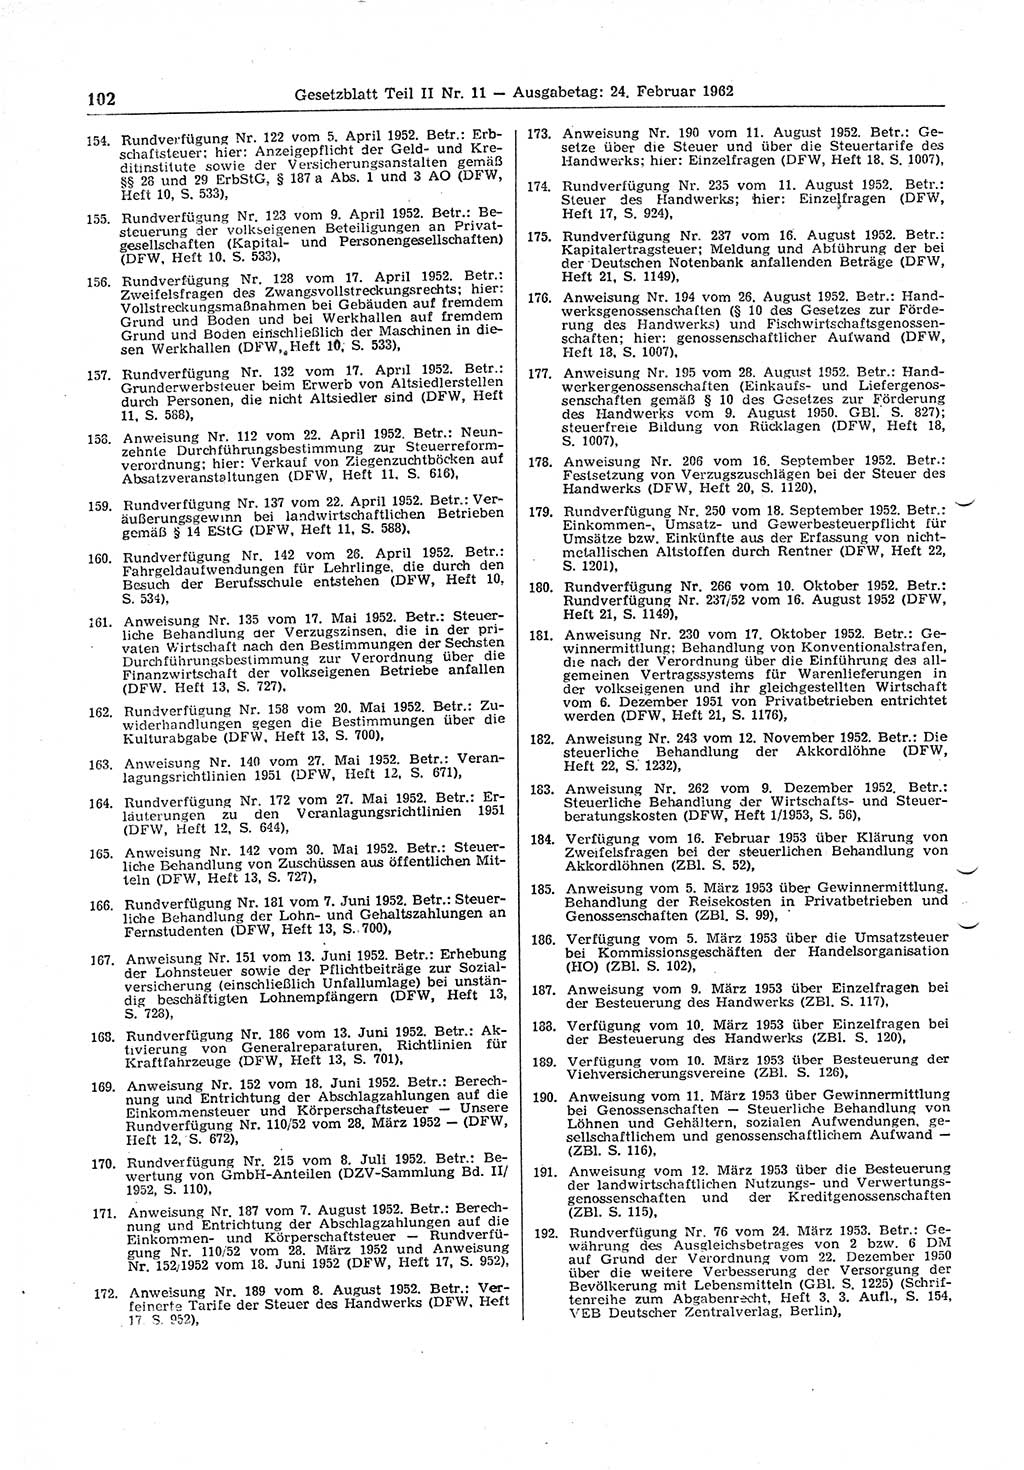 Gesetzblatt (GBl.) der Deutschen Demokratischen Republik (DDR) Teil ⅠⅠ 1962, Seite 102 (GBl. DDR ⅠⅠ 1962, S. 102)